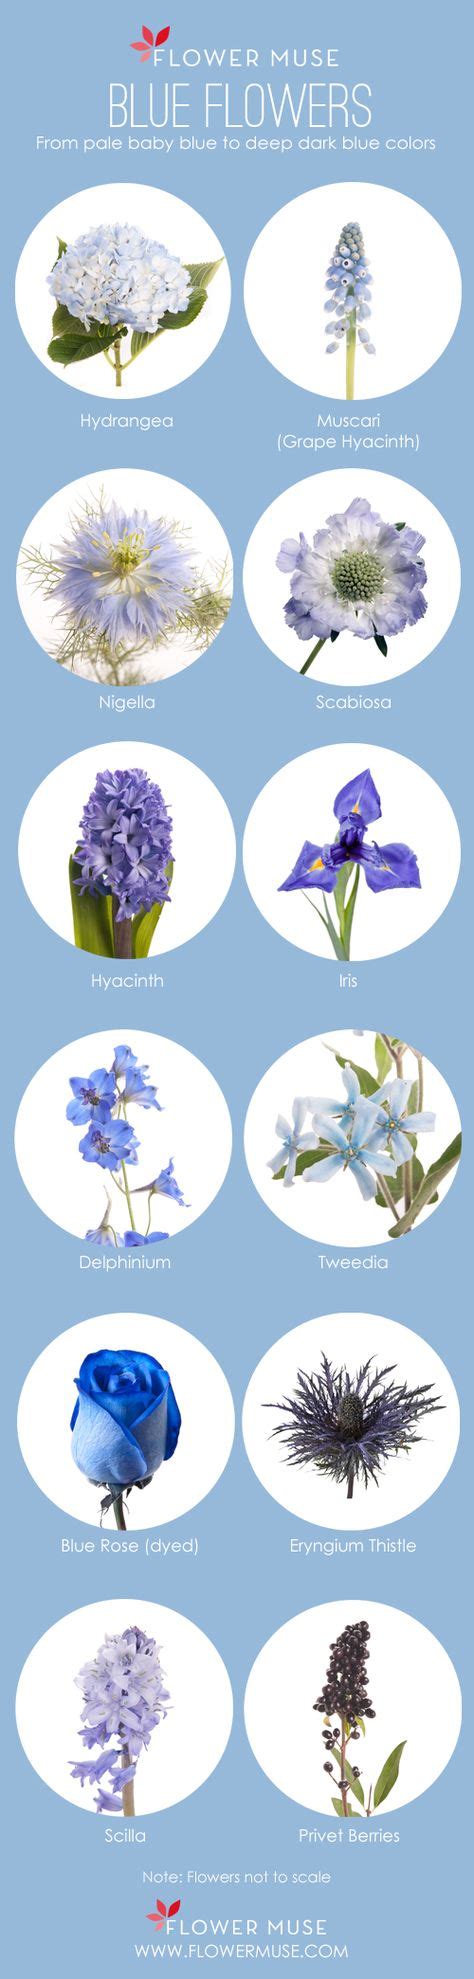 As 25 Melhores Ideias De Blue Flower Names No Pinterest Amor Flores